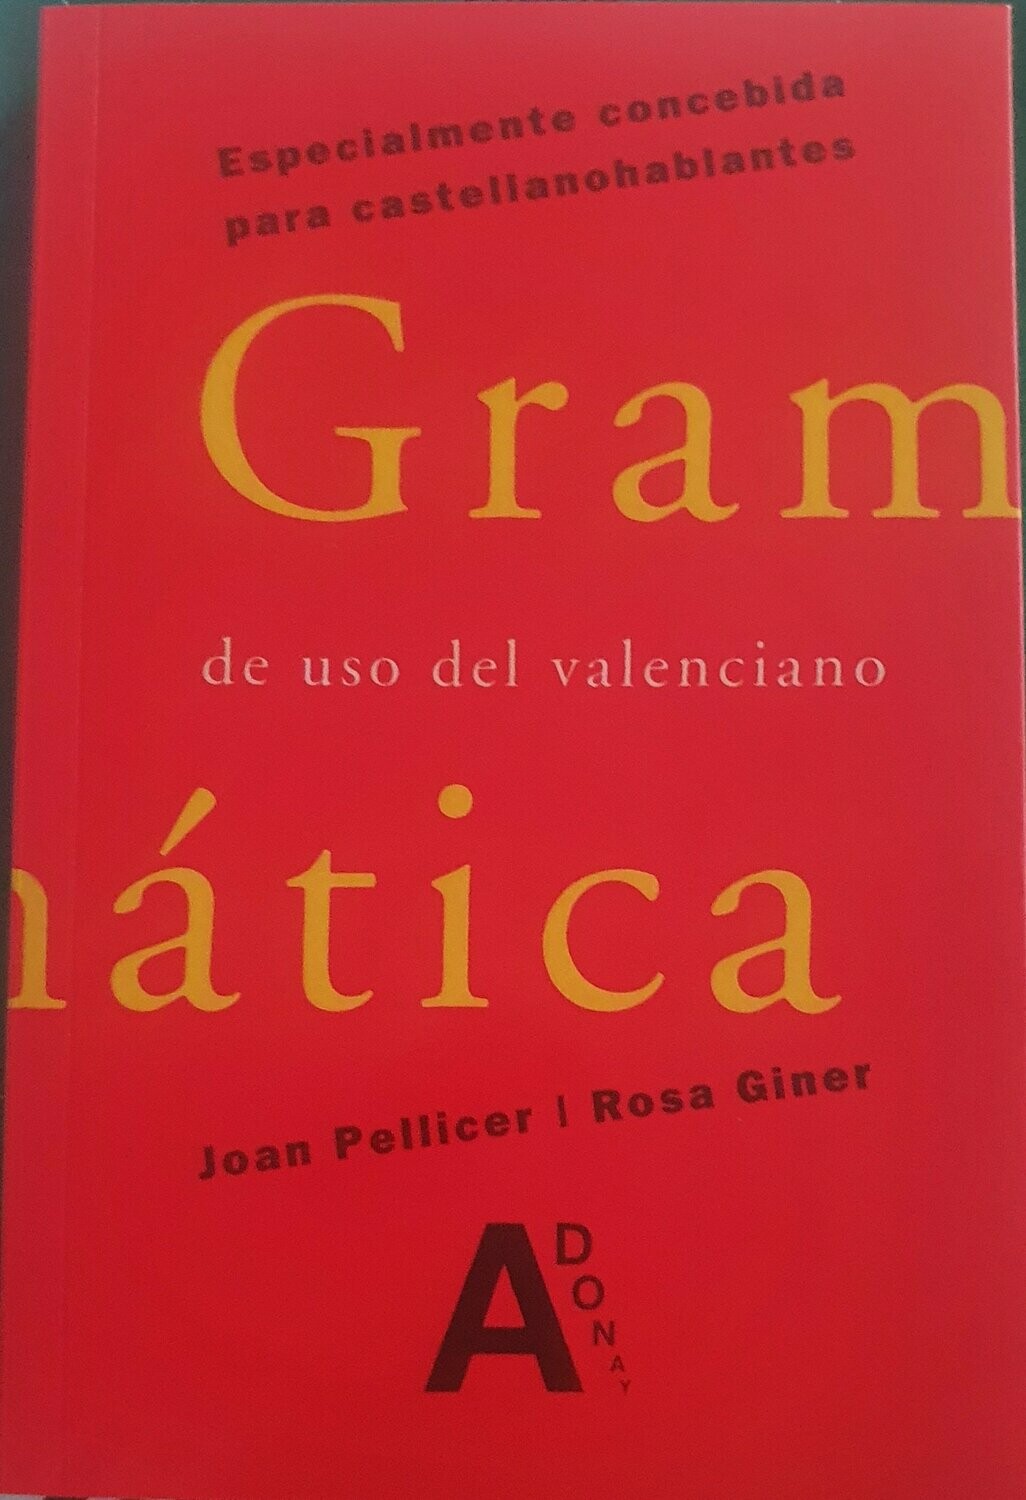 Gramática de uso del valenciano